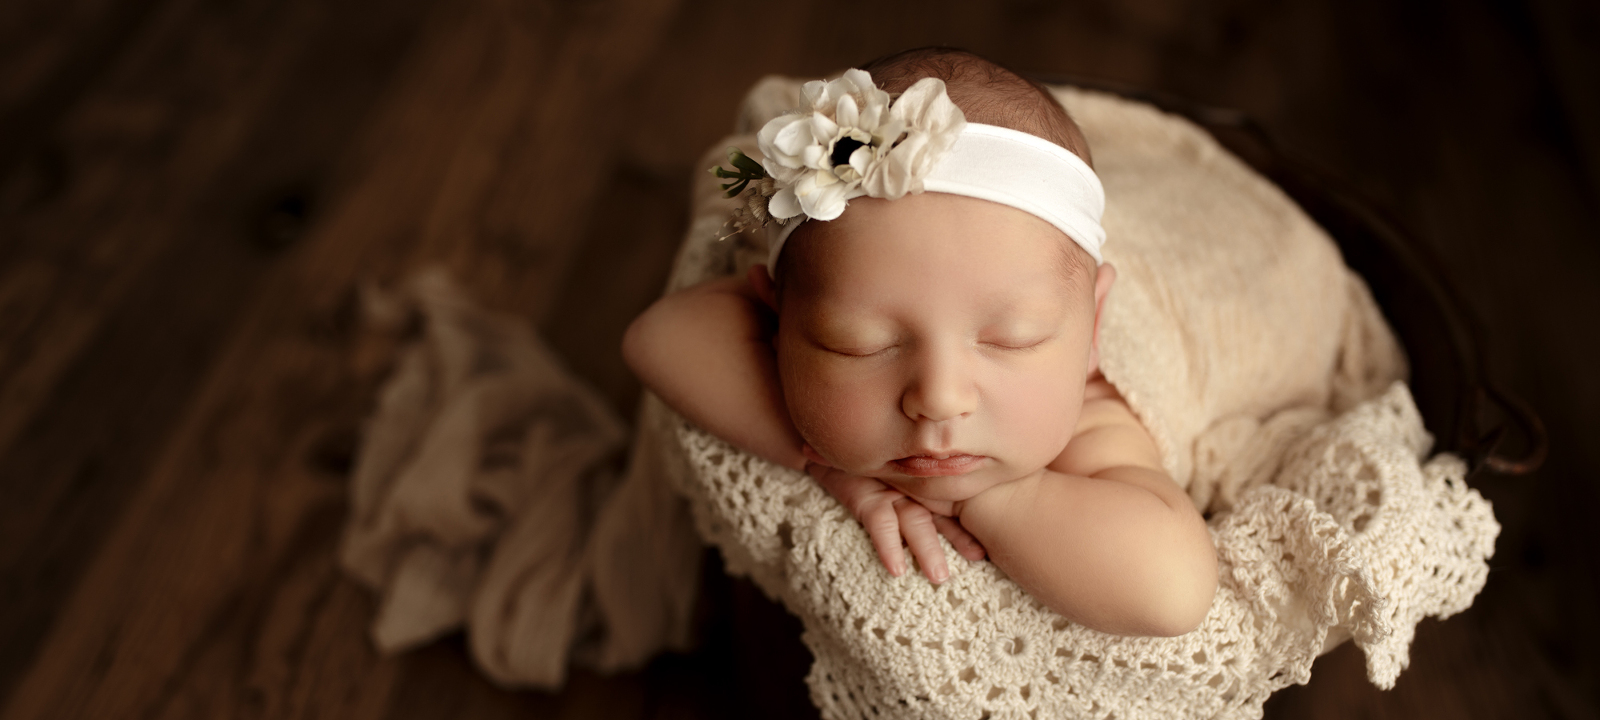 Atelier nordbrise Fine Art Fotografie | Newborn Baby Kind Familie Babybauch Newborn